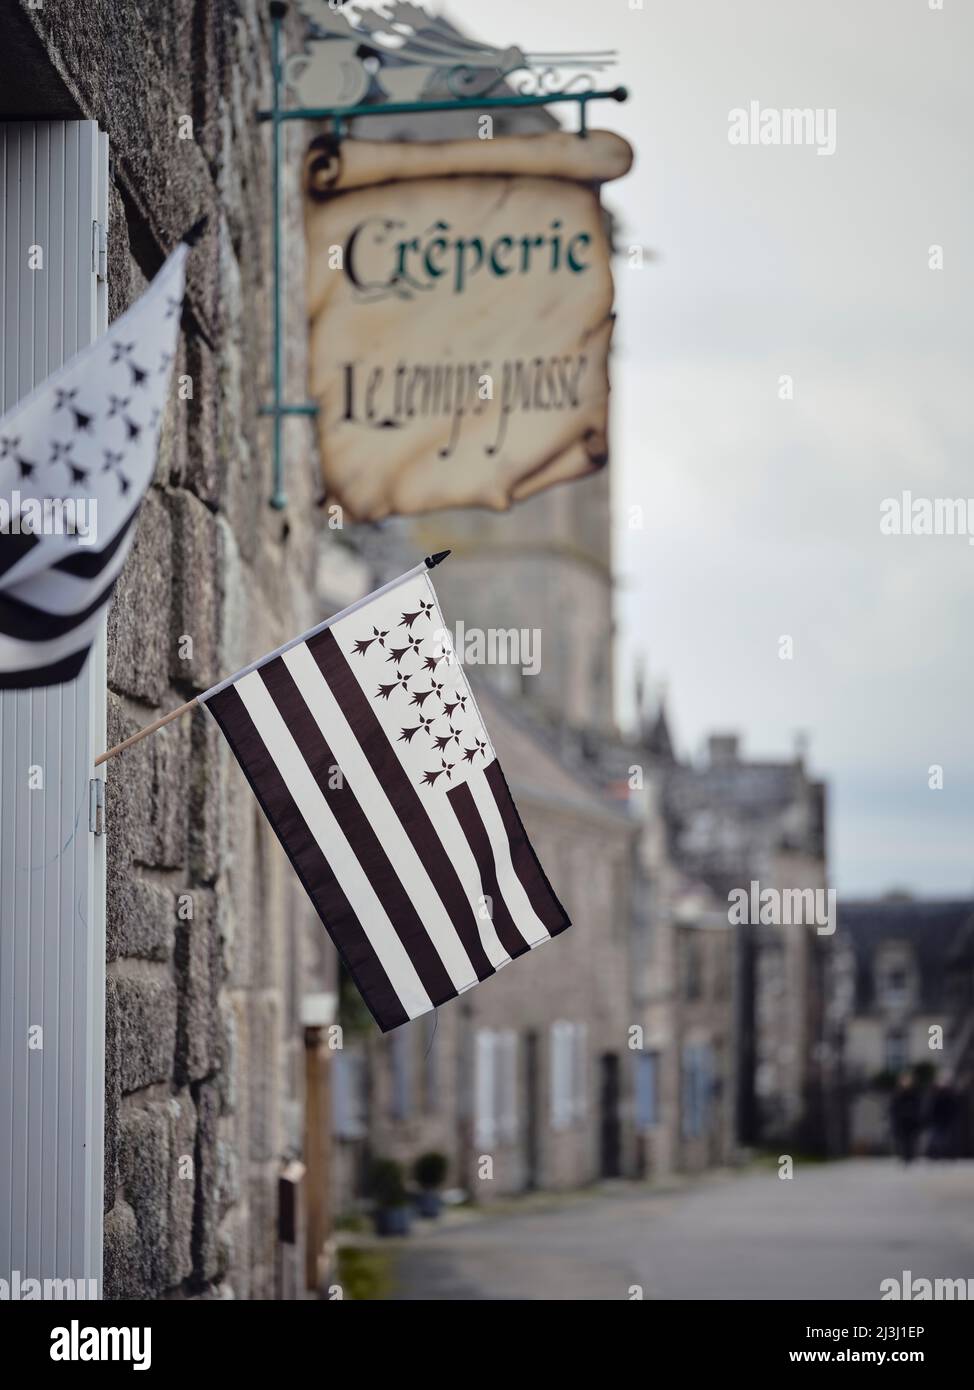 Die bretonische Flagge bei einem crêperie in Locronan im Departement Finistère in der Bretagne. Die Hütten wurden aus Granit gebaut und stammen aus dem 17.. Jahrhundert. Locronans historische Kulisse wurde in vielen Film- und Fernsehproduktionen gezeigt. Locronan ist ein beliebtes Ausflugsziel. Stockfoto